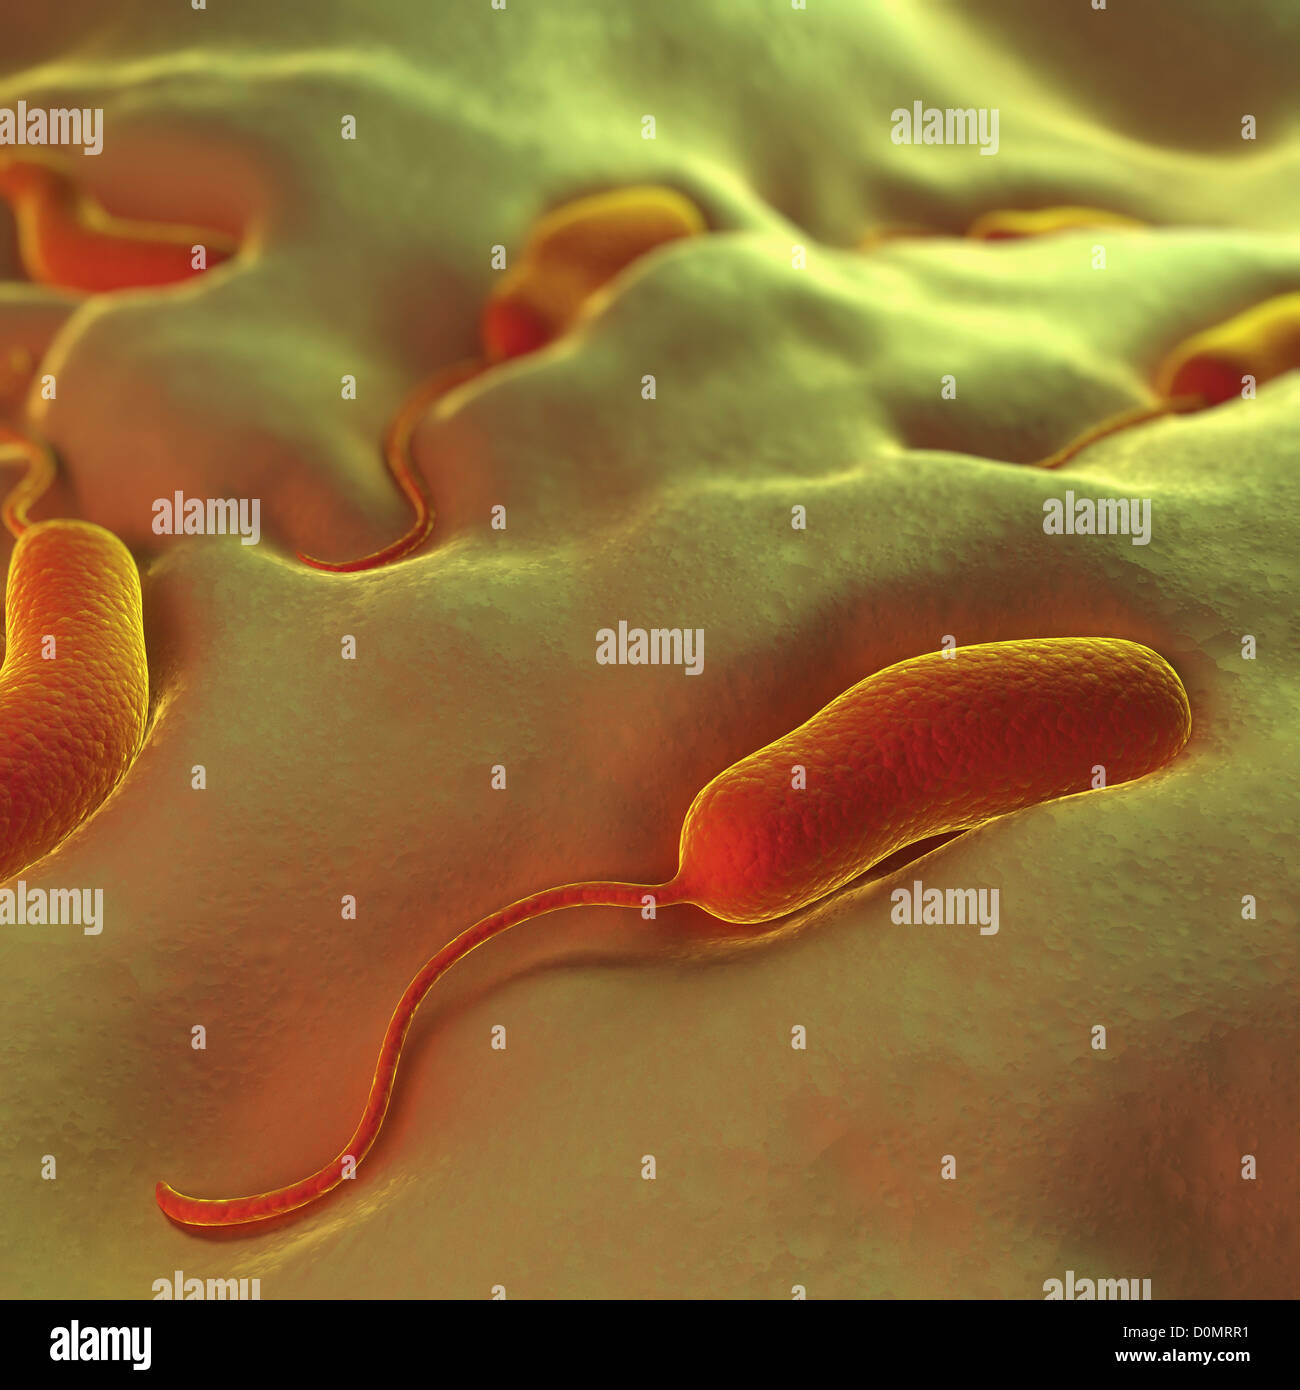 Groupe de vibrio cholerae bactéries qui causent le choléra. Banque D'Images